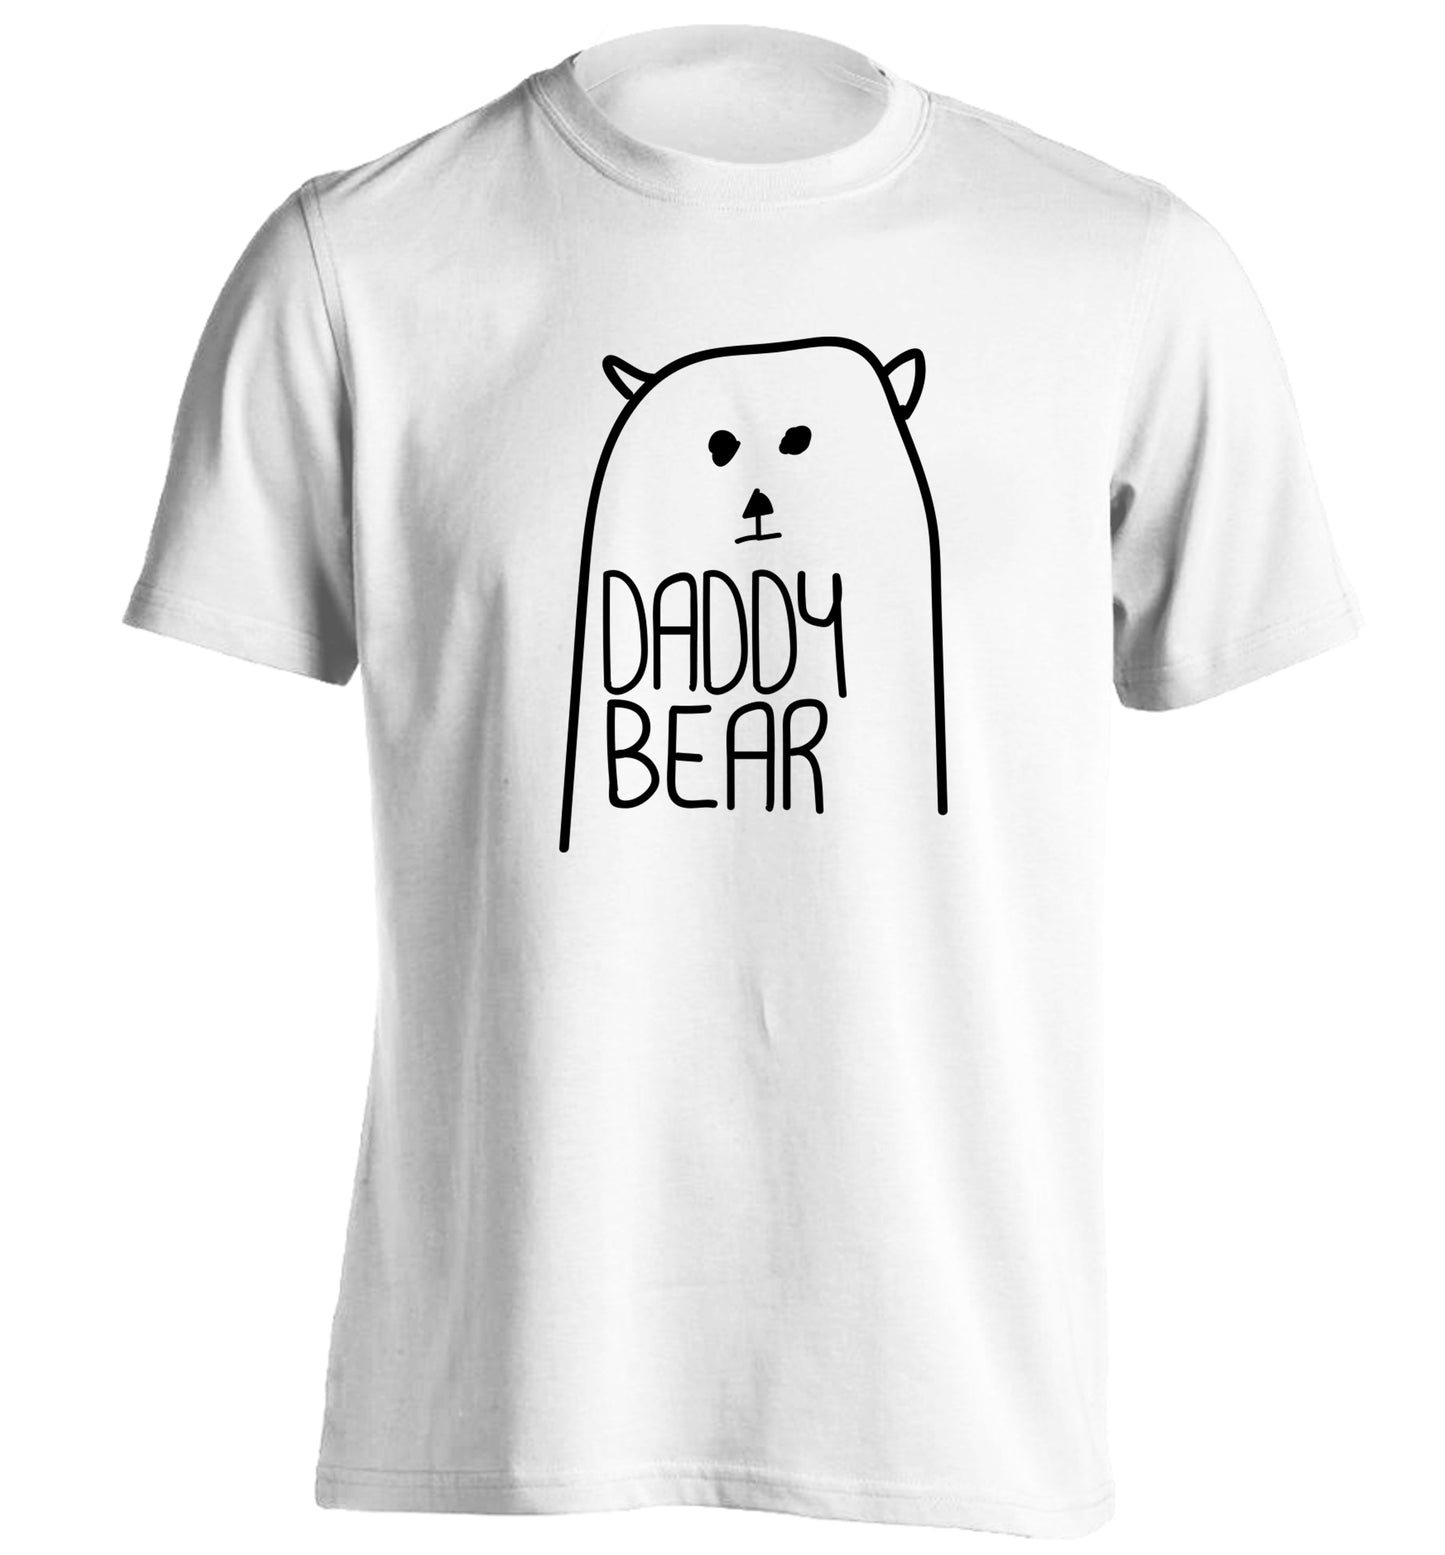 Daddy bear adults unisex white Tshirt 2XL